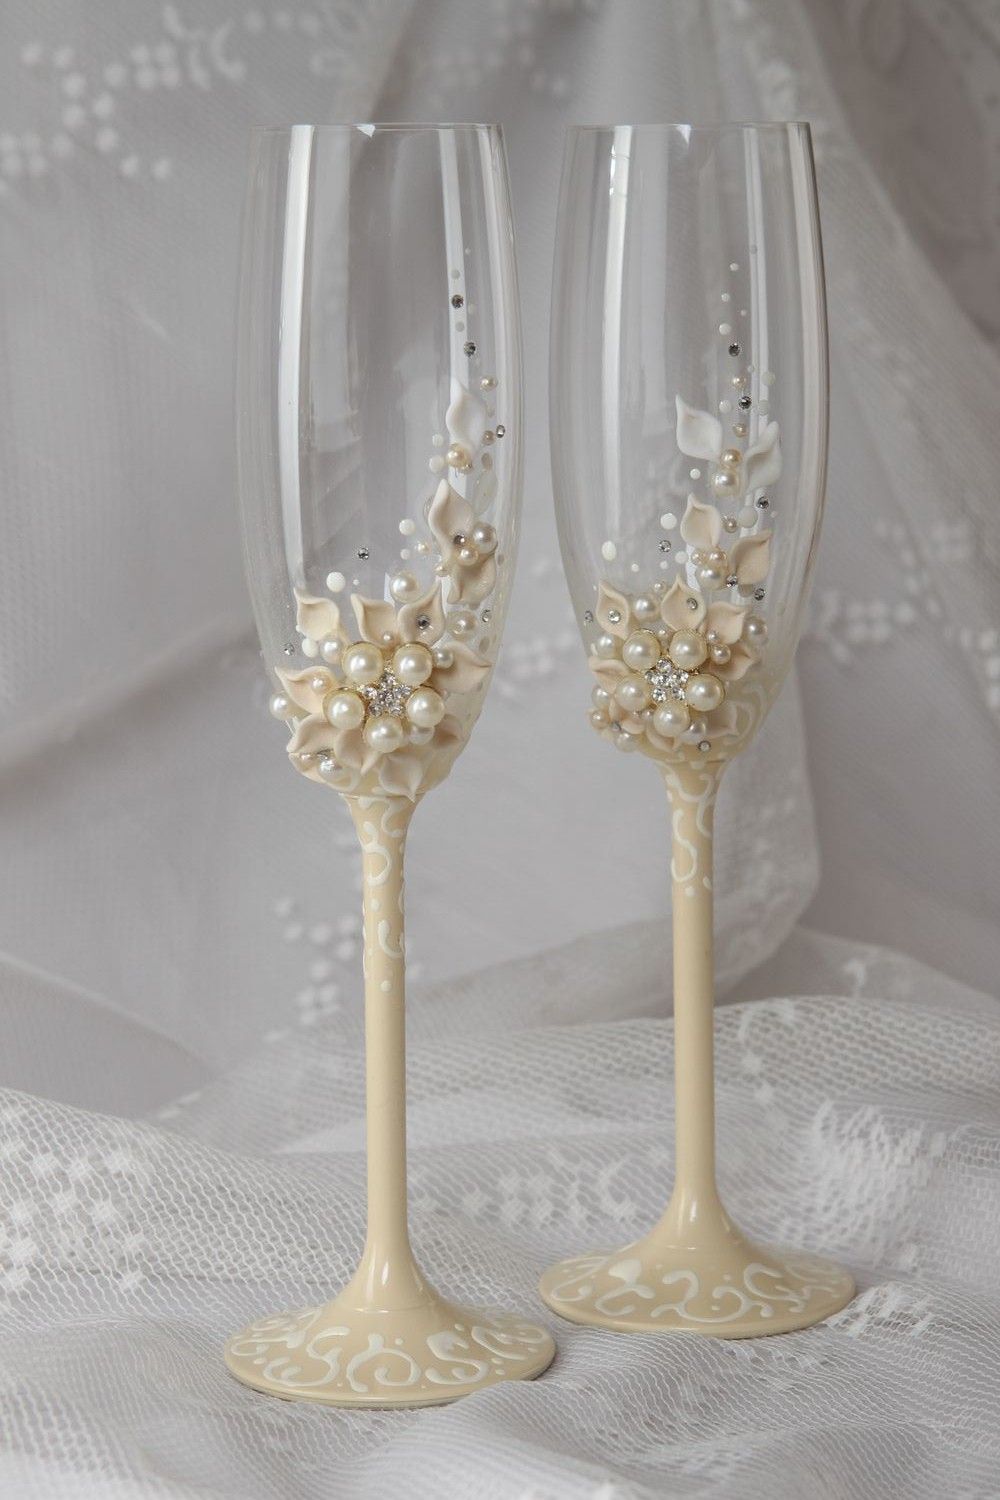 Verres de mariage fait main Flûtes champagne Décoration de table mariage photo 1